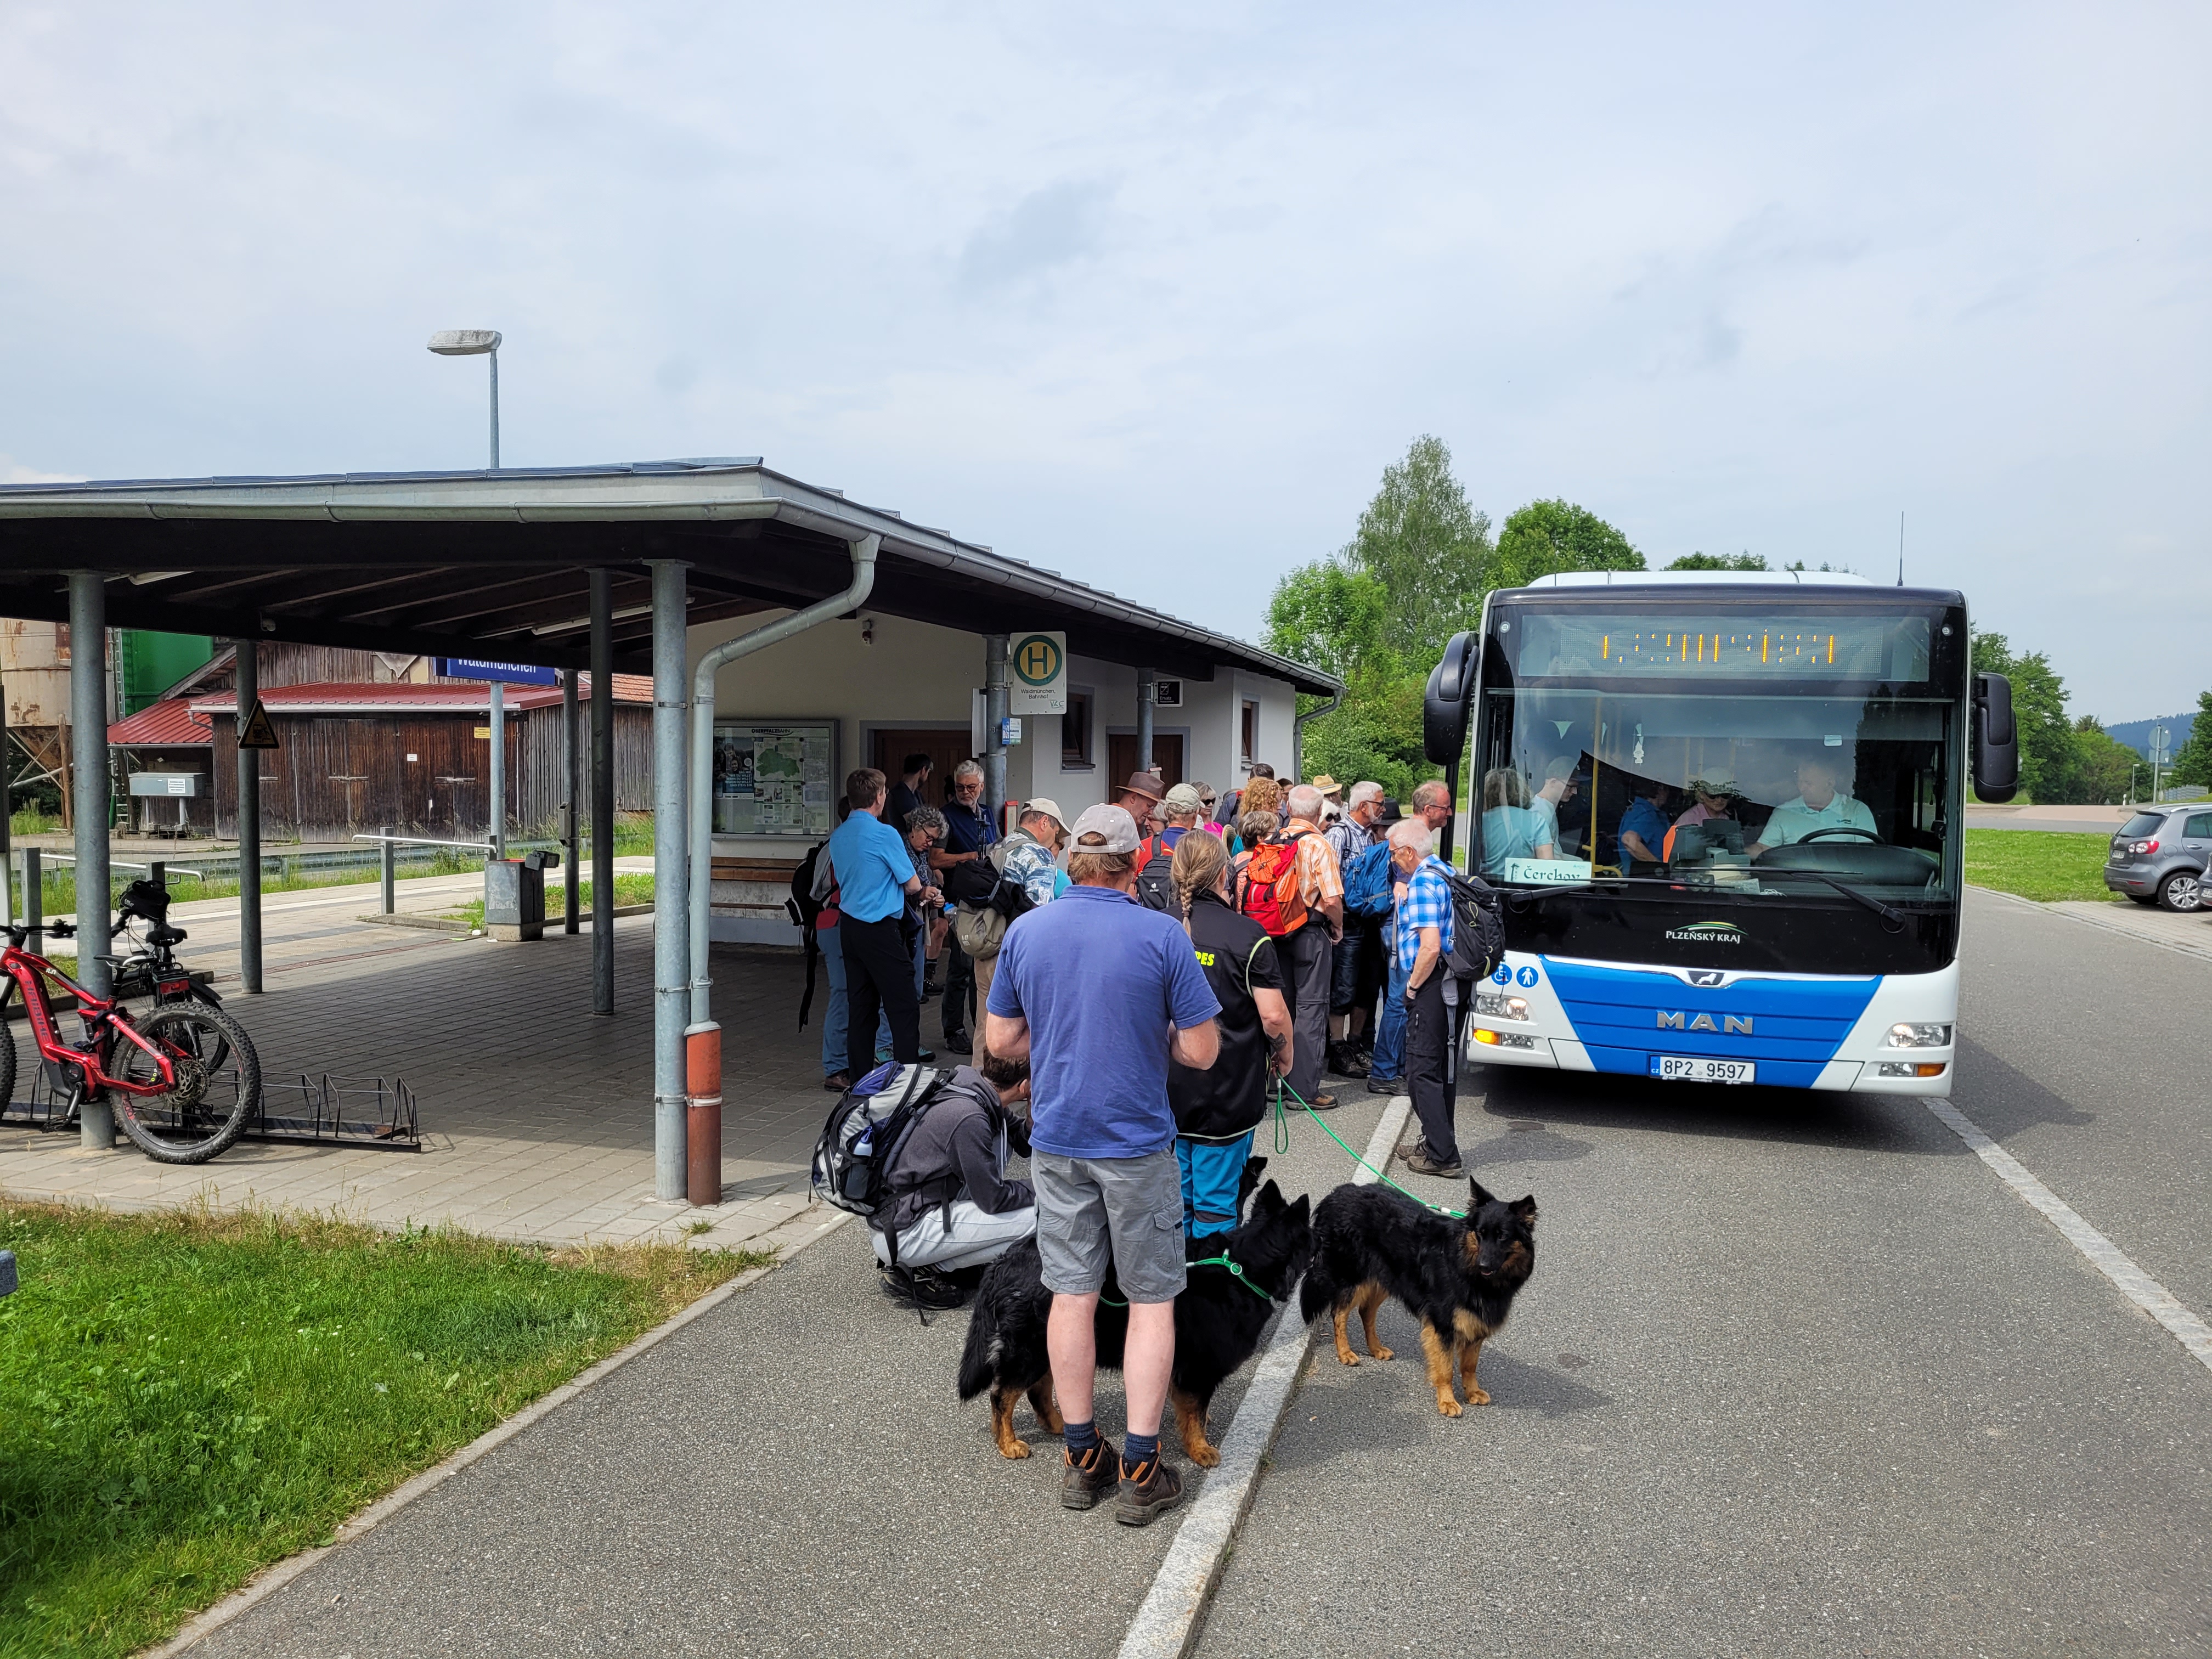 Der Čerchov-Bus an der Haltestelle am Bahnhof in Waldmünchen. Ein beliebtes Verkehrsmittel für Wanderer, Urlauber und Ausflügler in der Region